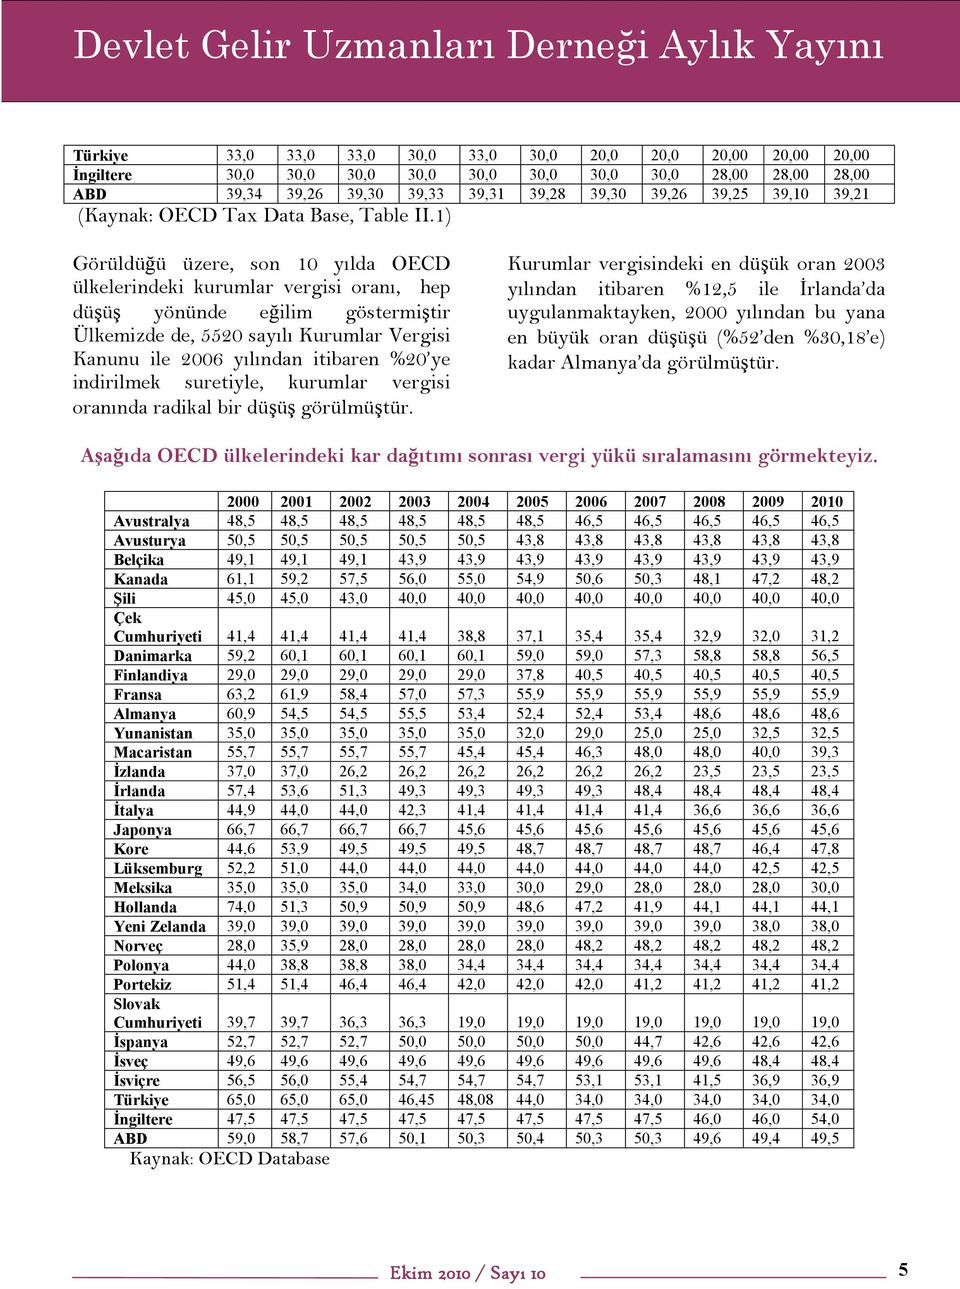 1) Görüldüğü üzere, son 10 yılda OECD ülkelerindeki kurumlar vergisi oranı, hep düşüş yönünde eğilim göstermiştir Ülkemizde de, 5520 sayılı Kurumlar Vergisi Kanunu ile 2006 yılından itibaren %20 ye